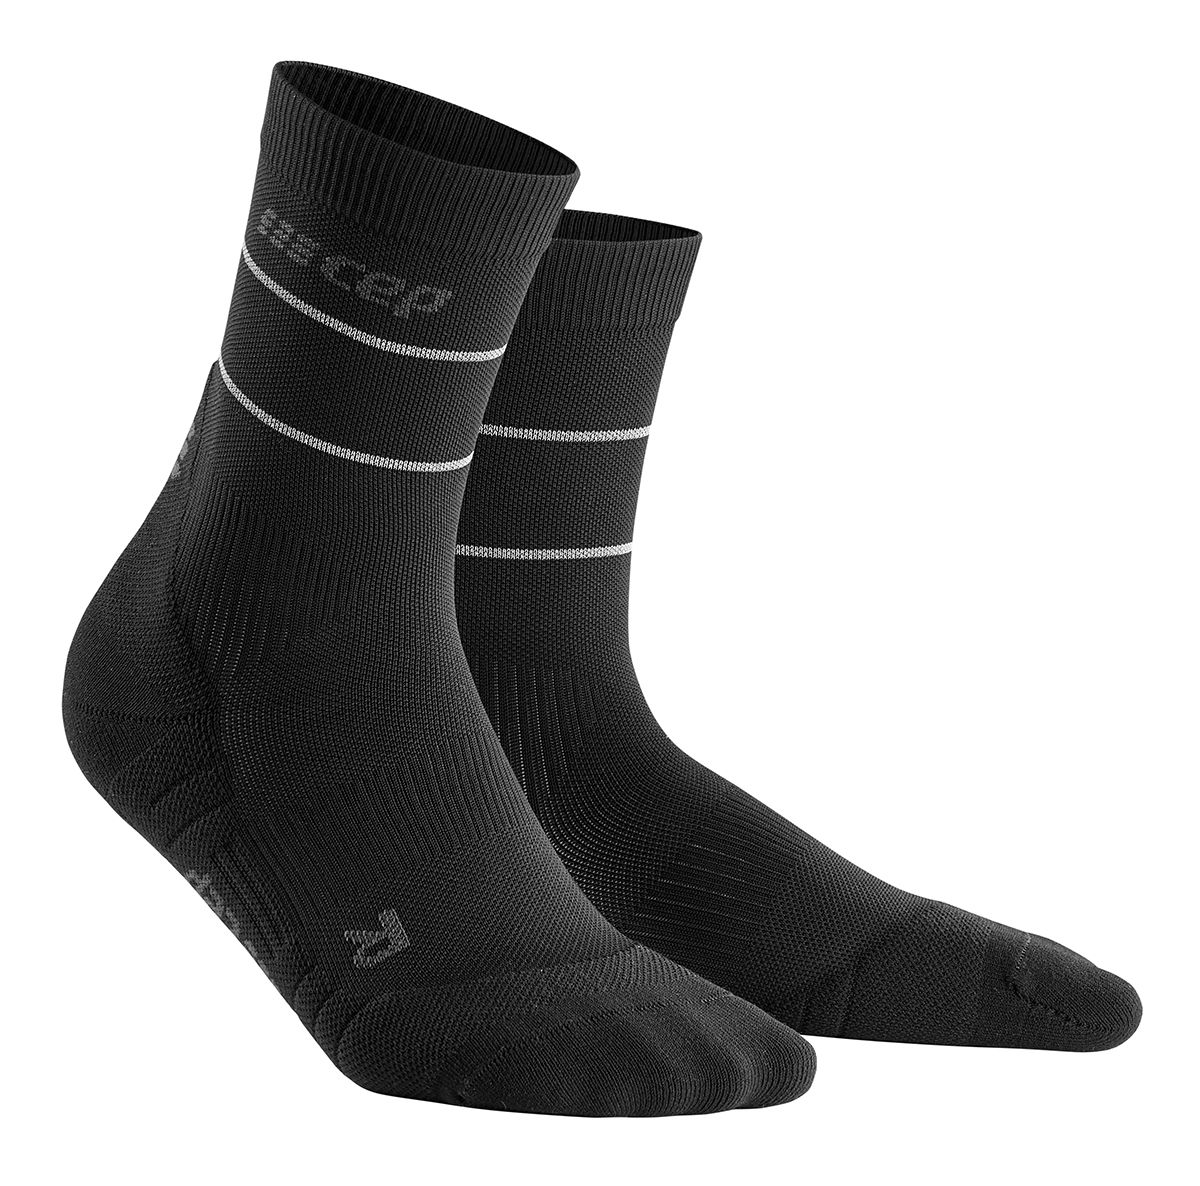 Мужские компрессионные носки CEP Reflective функциональные укороченные гольфы cep для спорта мужские